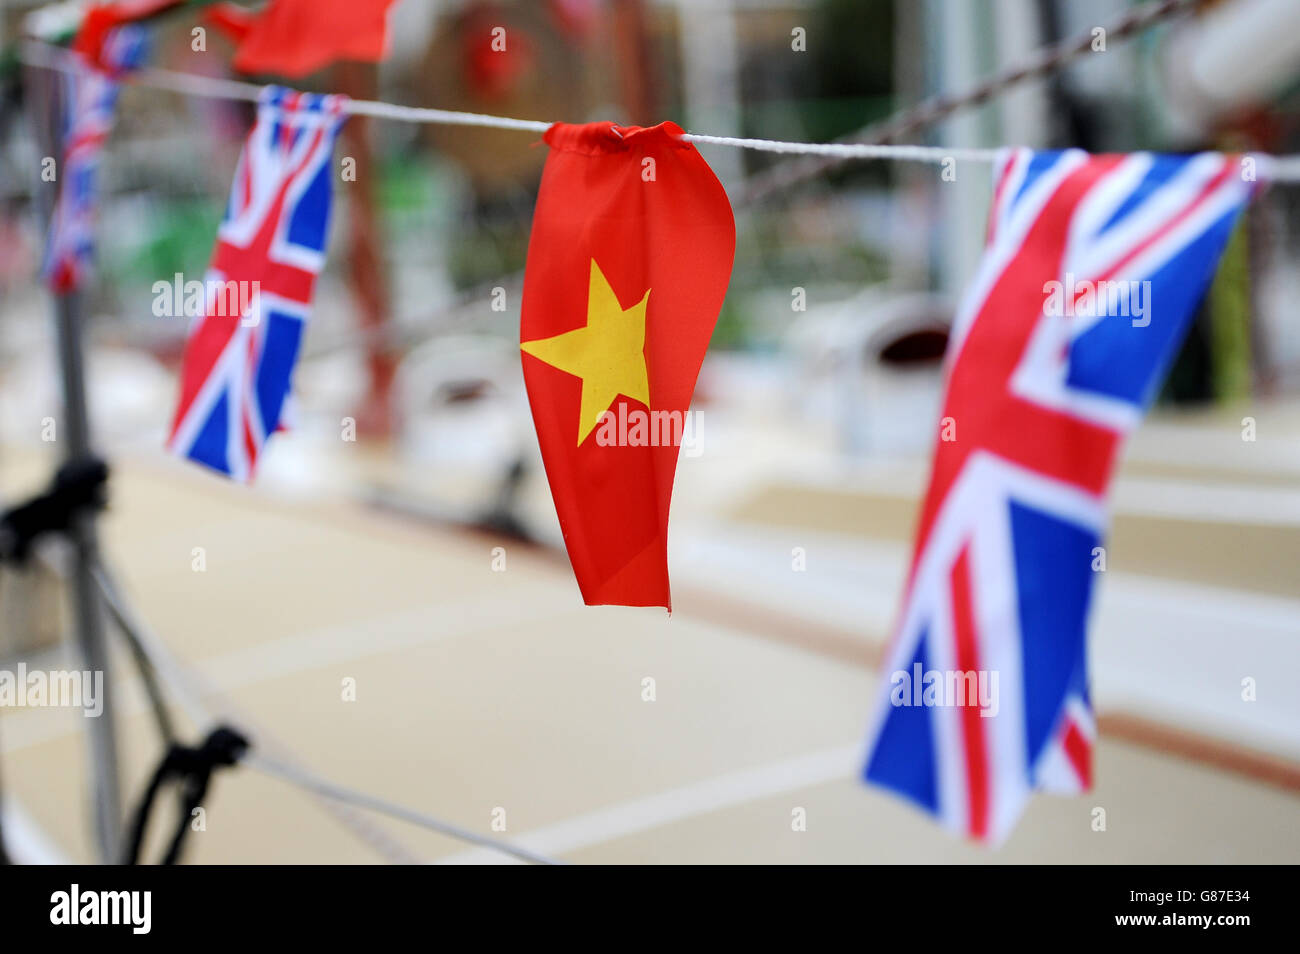 Vela - Clipper Round the World Yacht Race Launch - Día Cinco - St Katharine's Docks. Detalle de las banderas vietnamita y británica volando lado a lado en cuerda en St Katharine's Docks Foto de stock